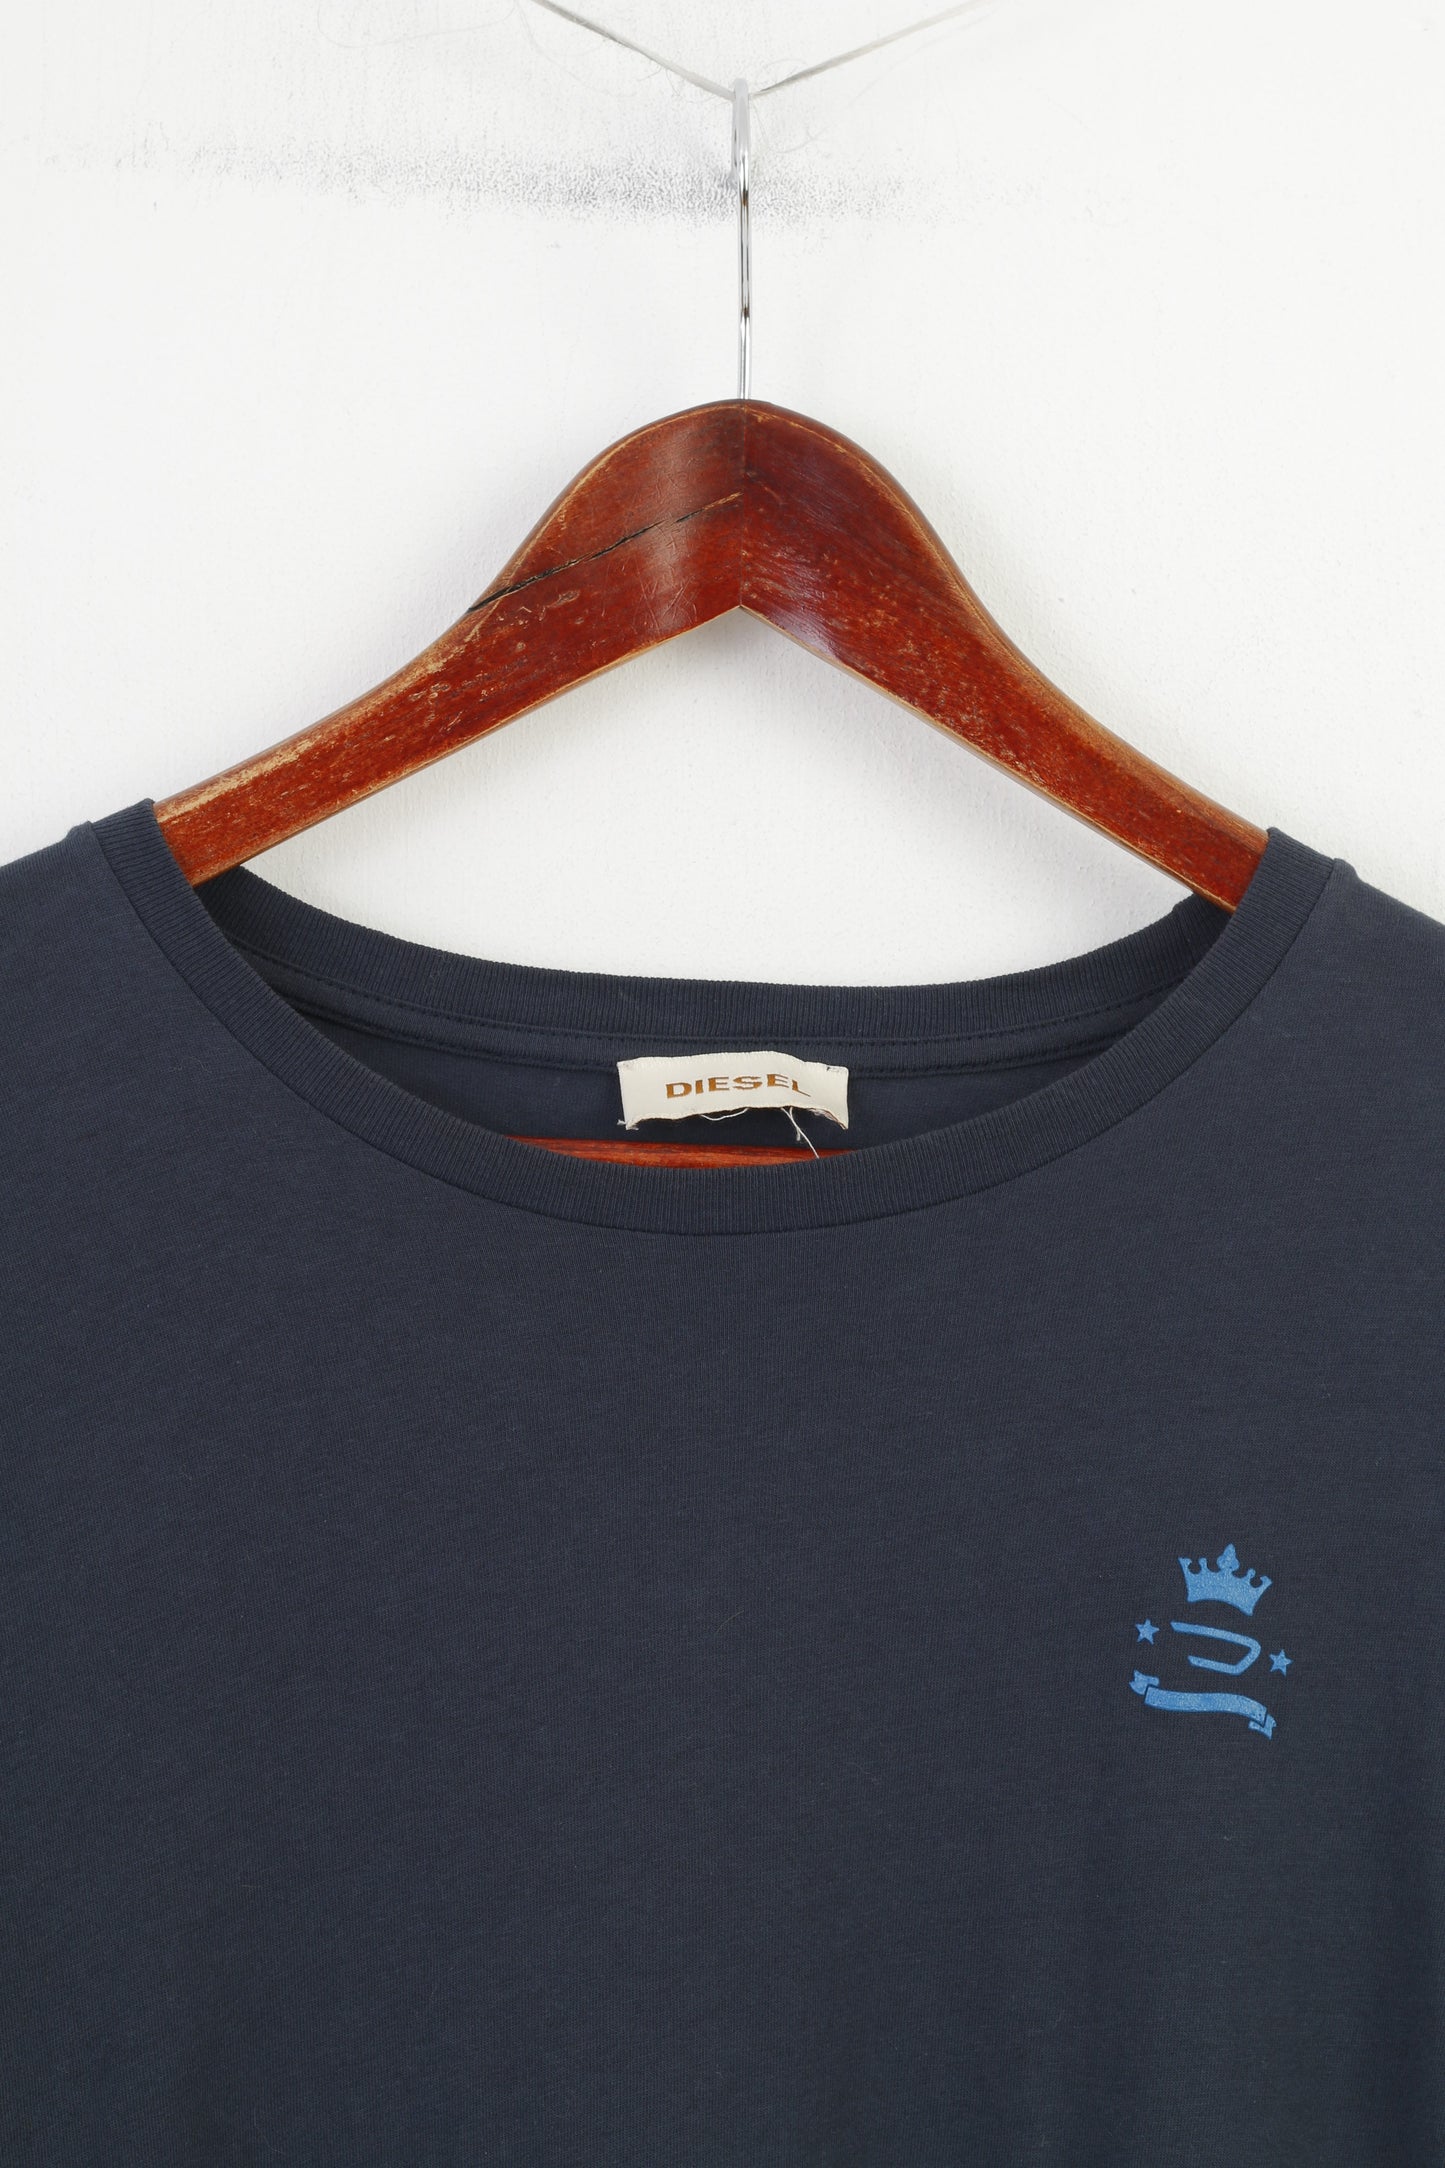 Diesel Men M T-Shirt Navy Cotton Crew Neck Stretch Vintage Logo Short Sleeve Top